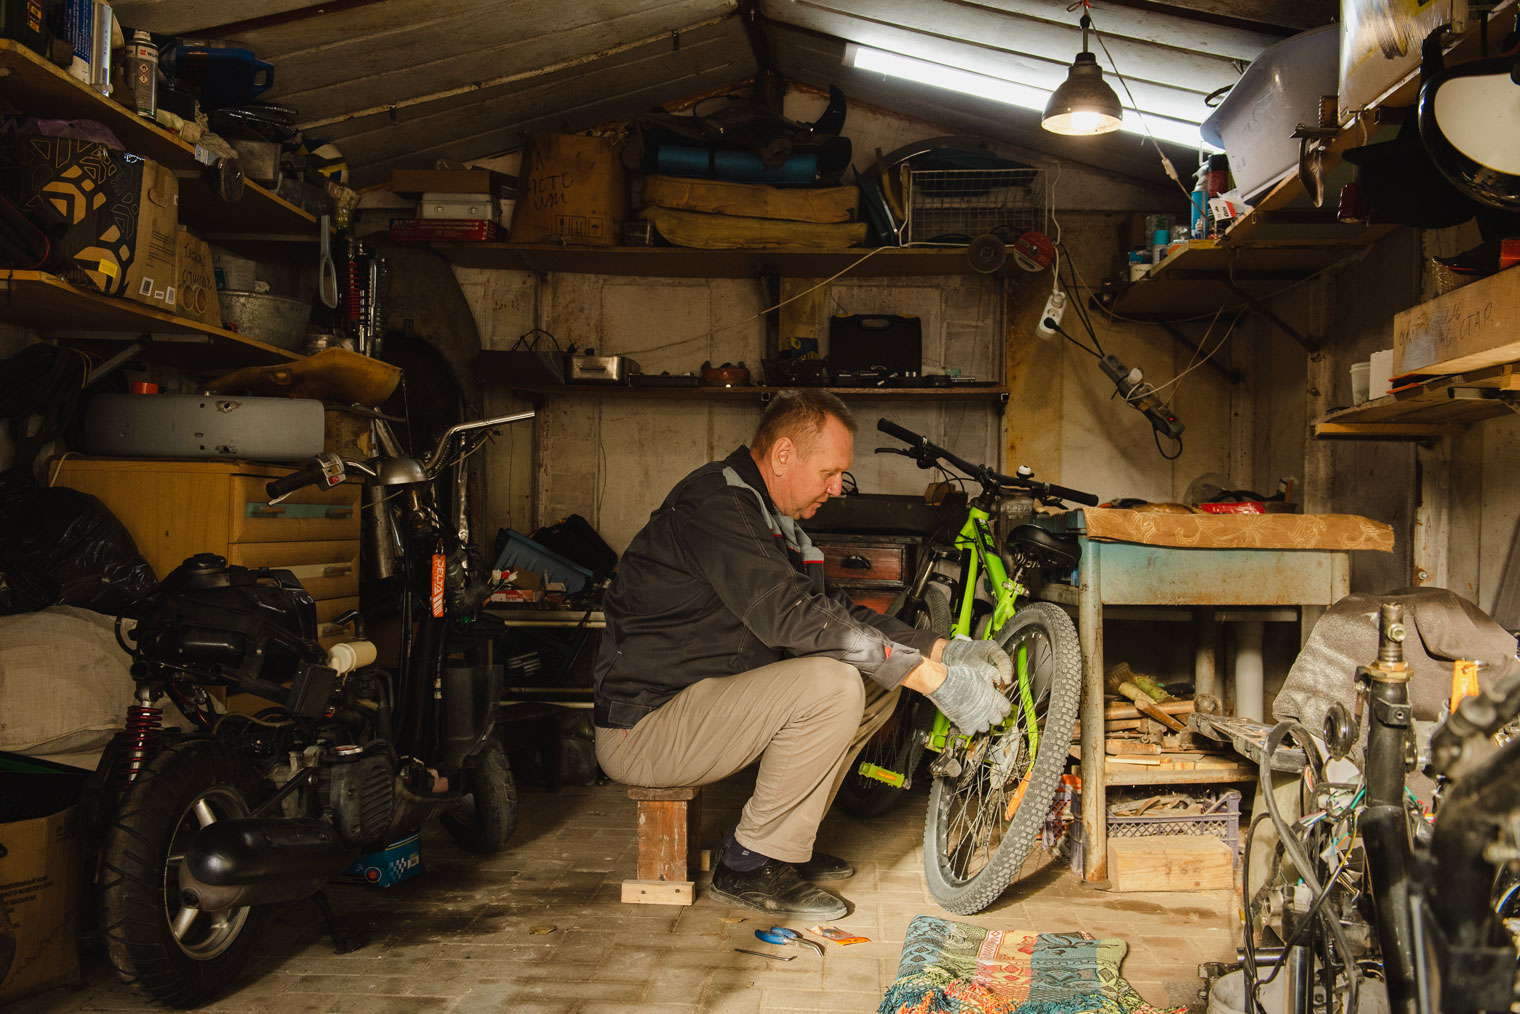 Папа делает ежедневный мелкий ремонт и техническое обслуживание велосипедов. Это экономит средства